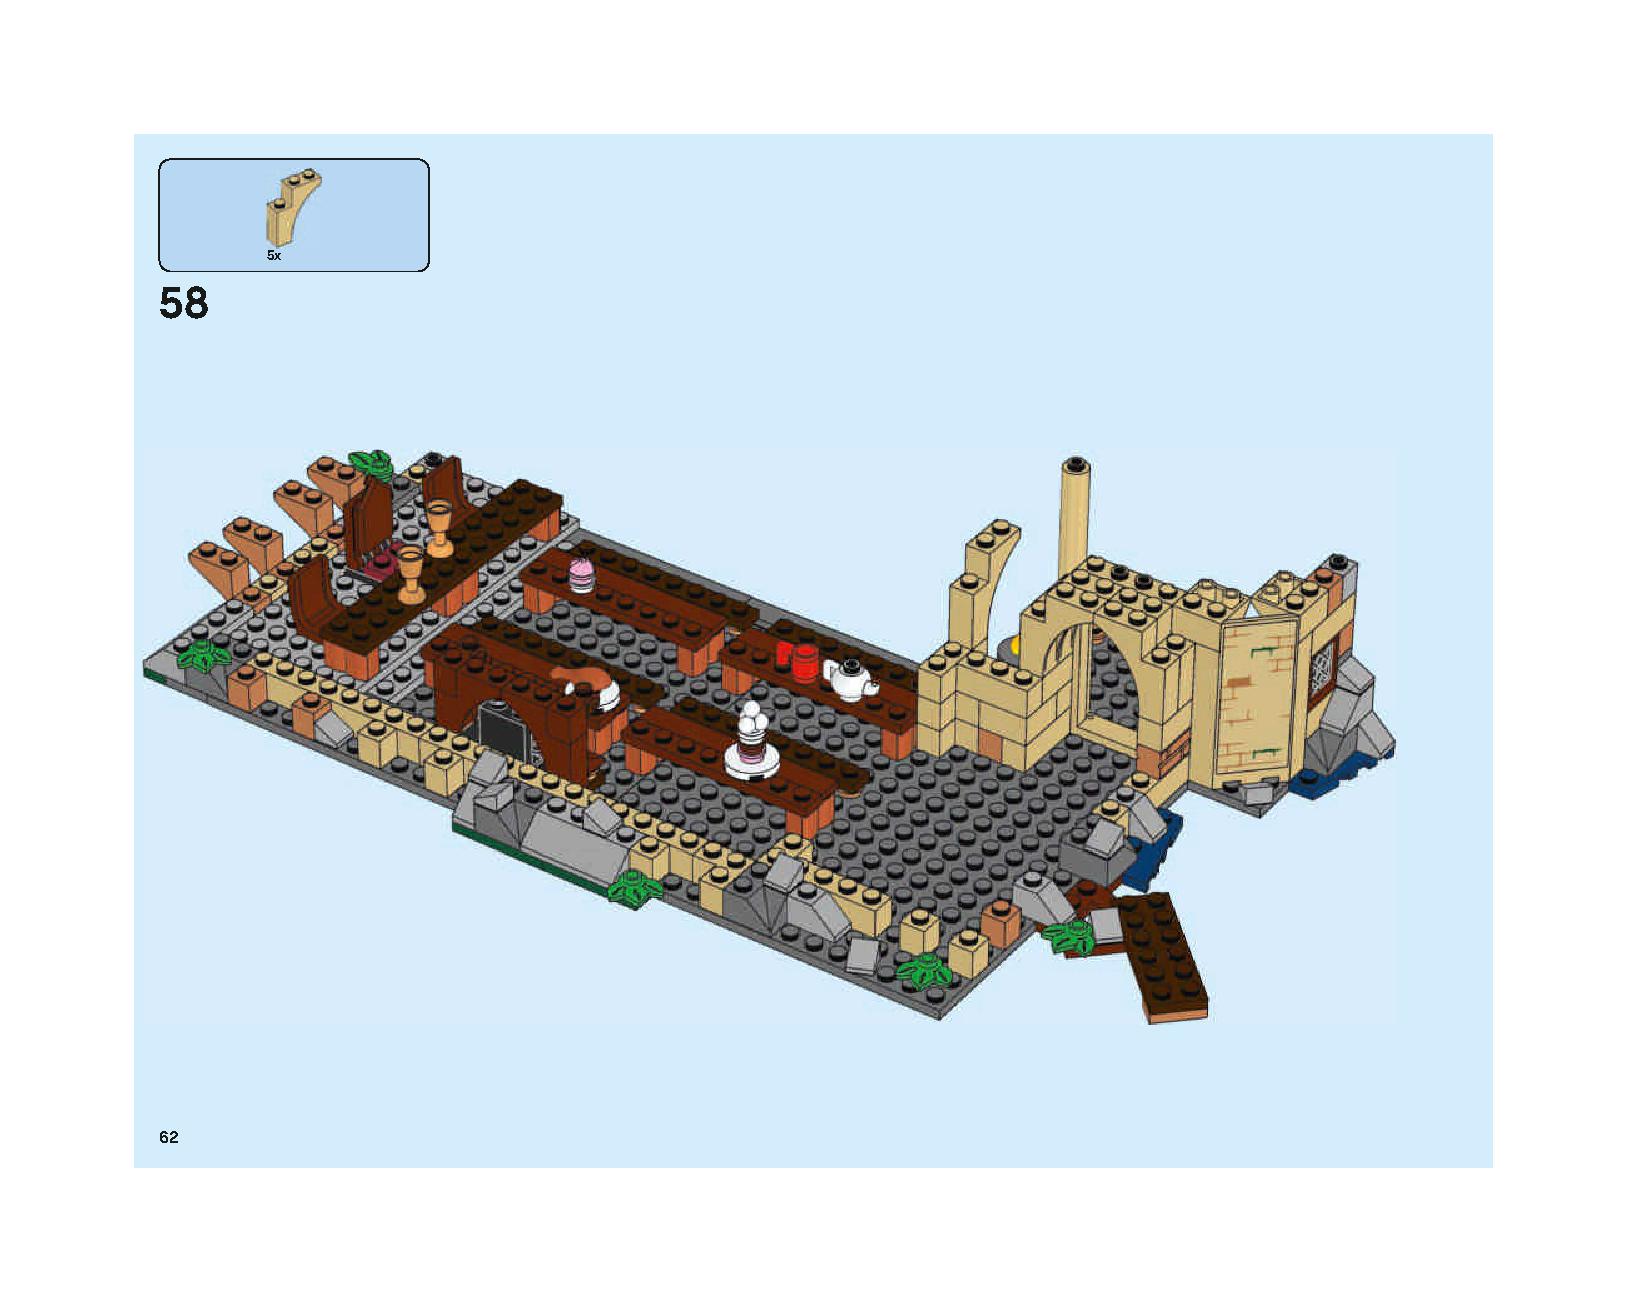 ホグワーツの大広間 75954 レゴの商品情報 レゴの説明書・組立方法 62 page